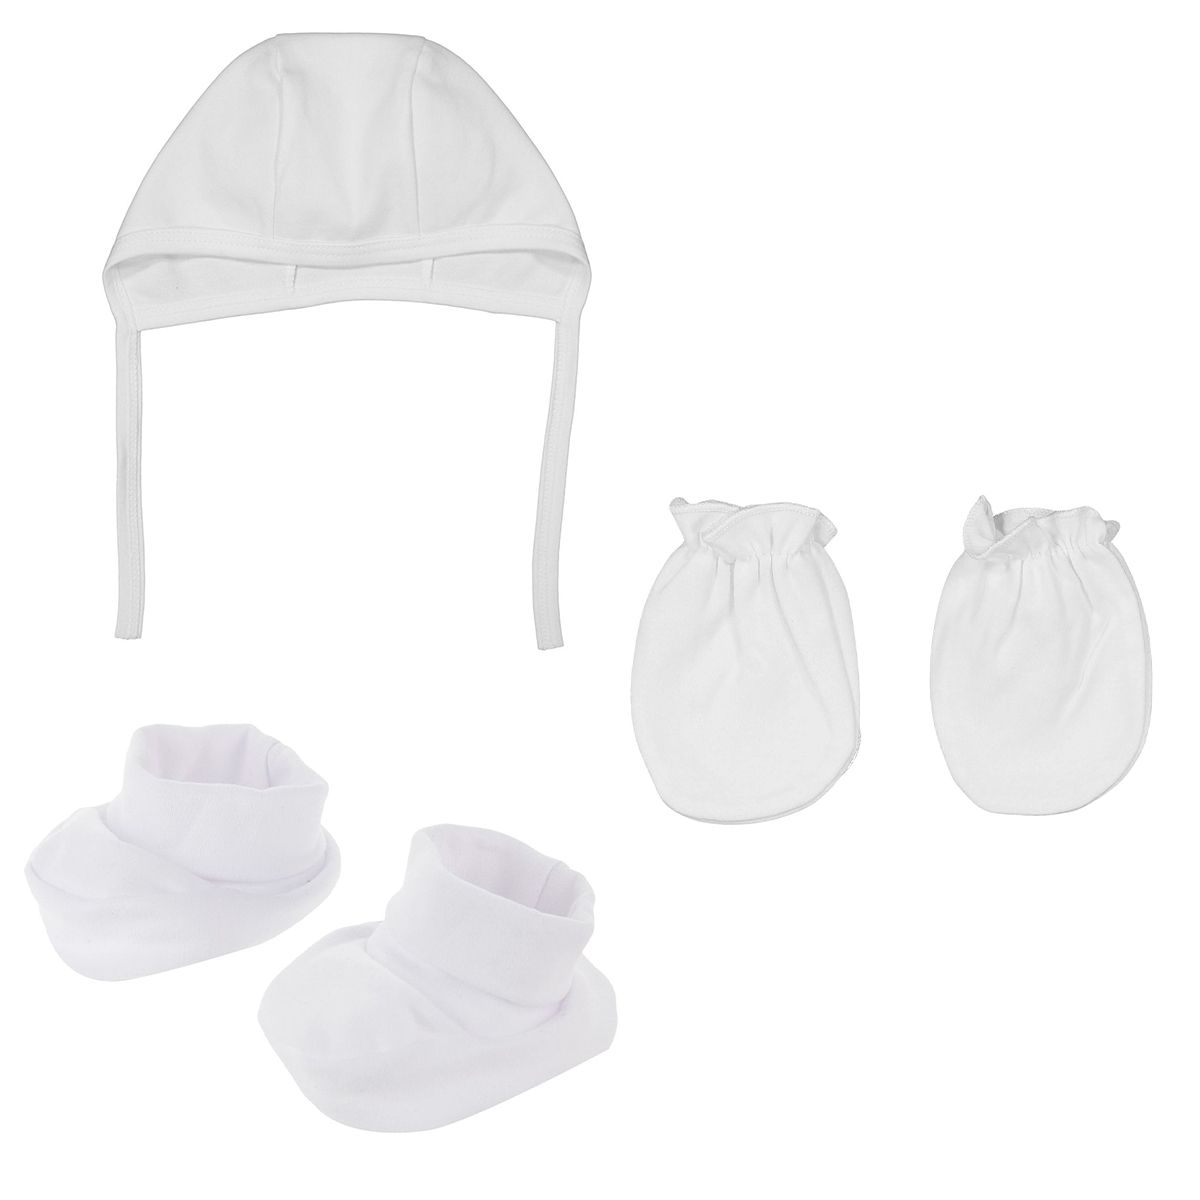 ست کلاه و دستکش و پاپوش نوزادی نیلی مدل barfi s 2022 -  - 1